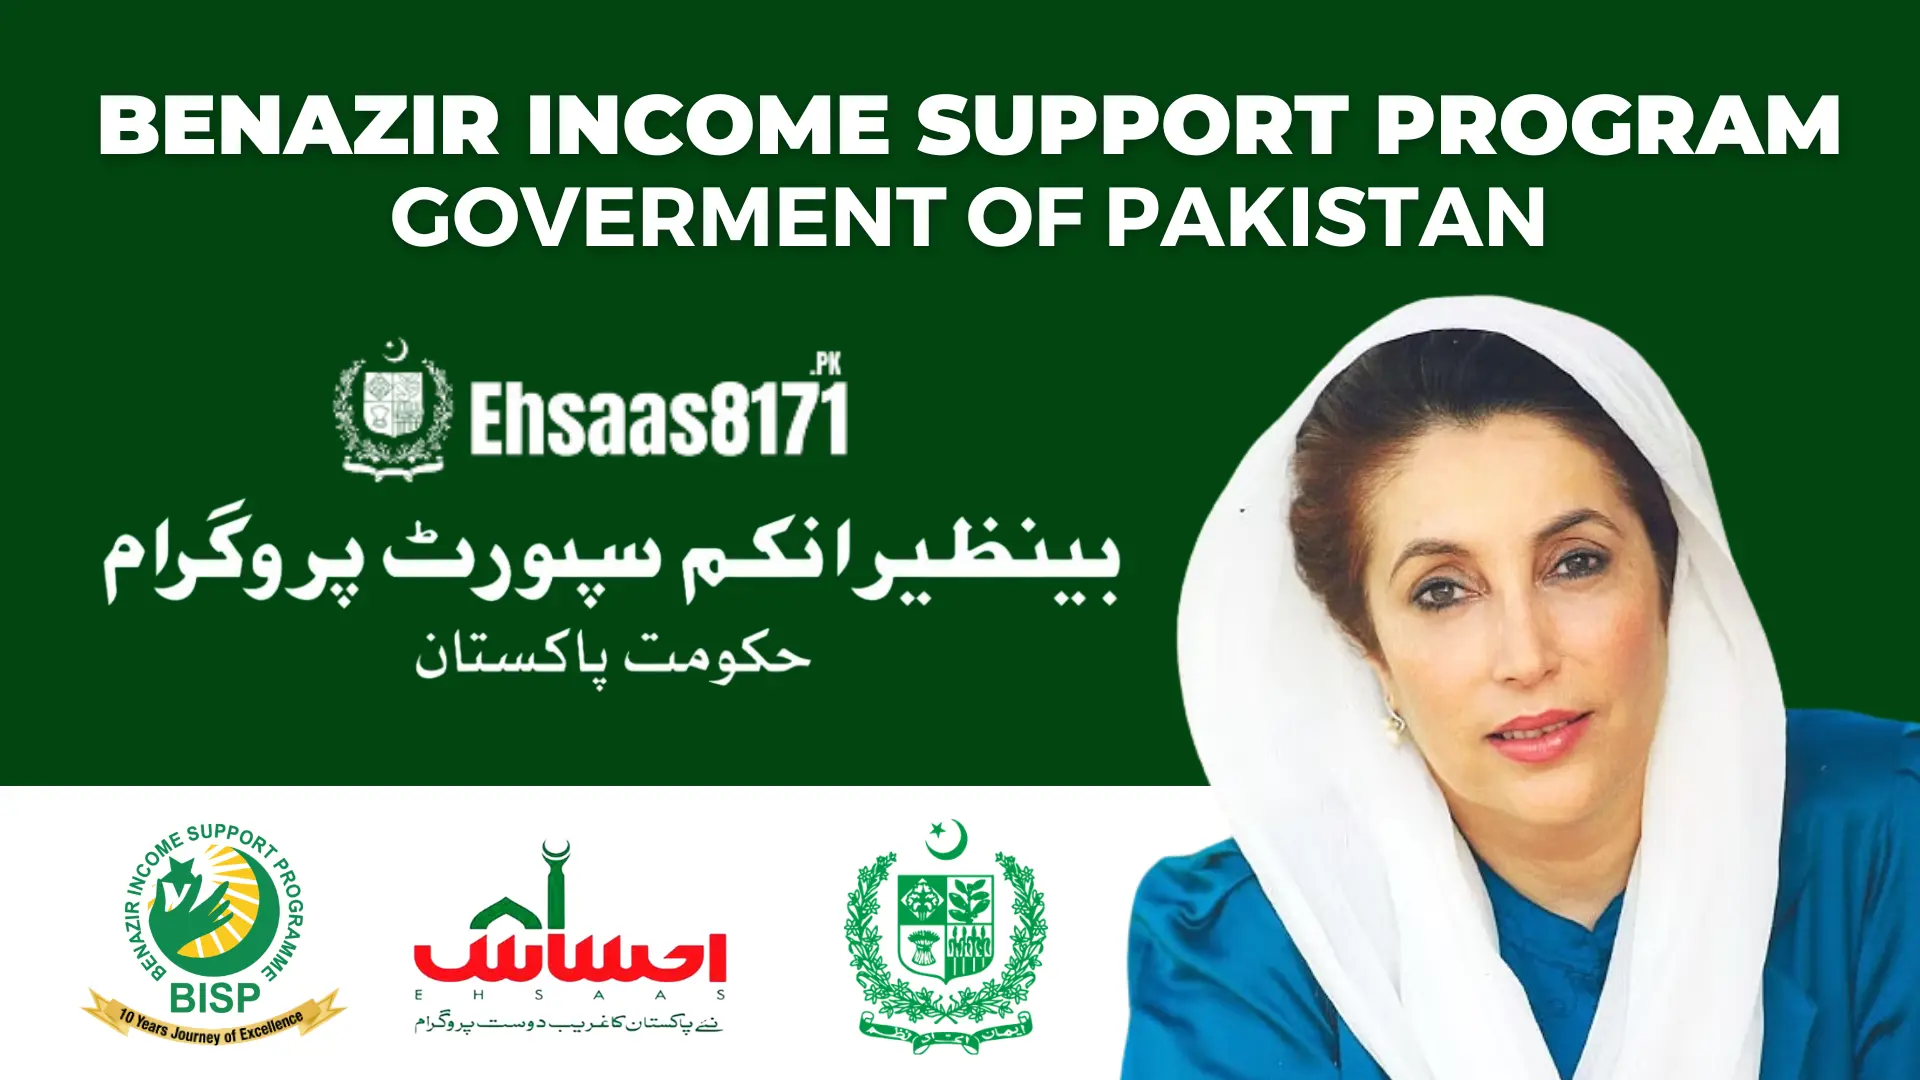 Benazir Income Support Program (BISP)